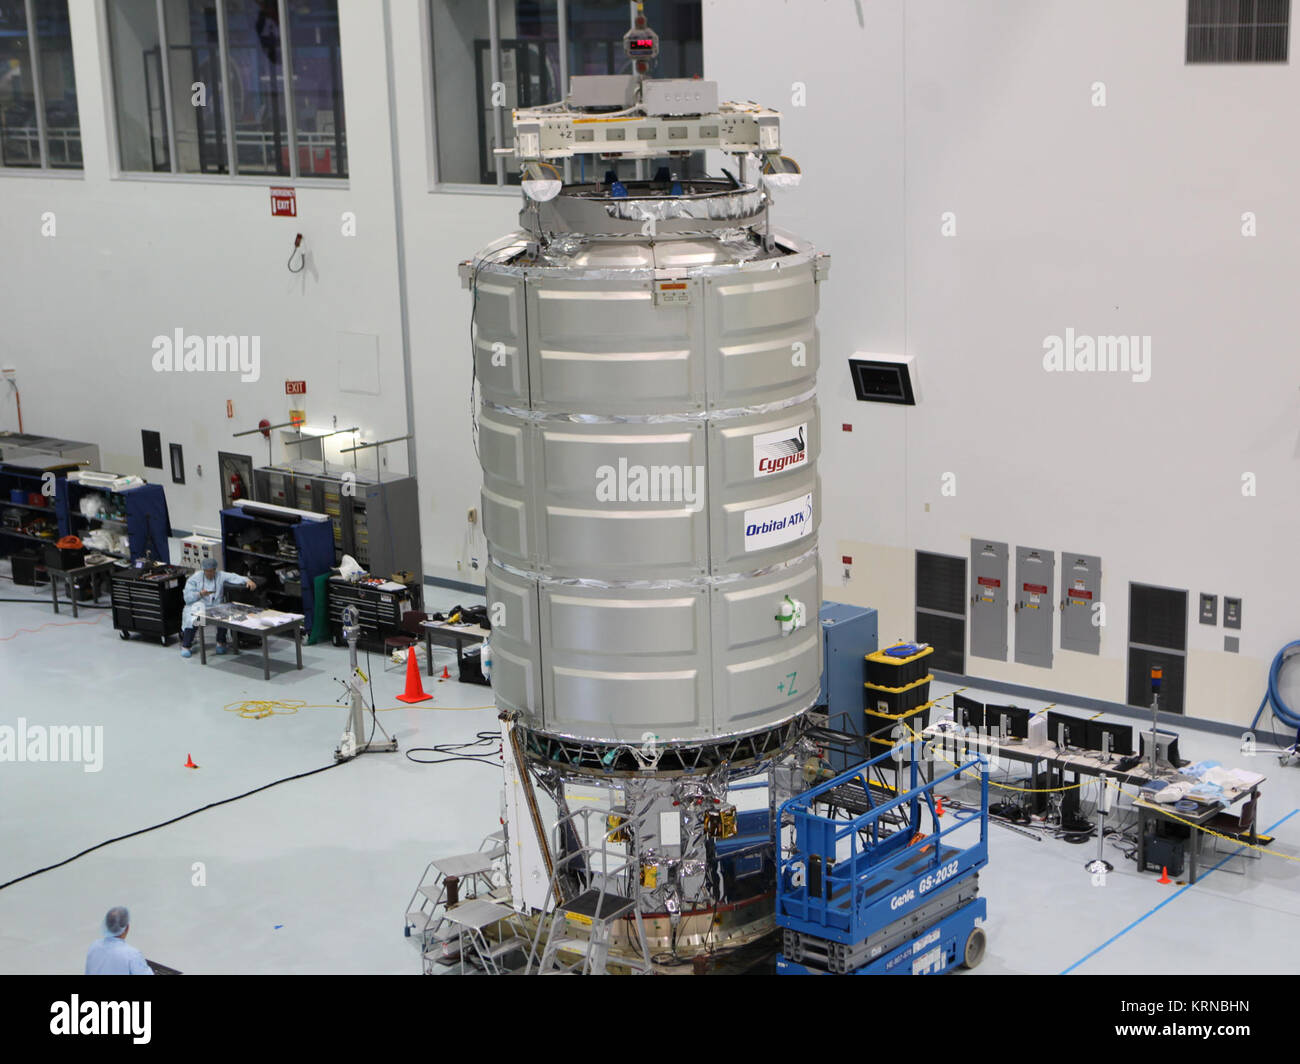 In der Space Station Processing Facility des NASA Kennedy Space Center in Florida, Techniker und Ingenieure eine Cygnus Raumsonde nach der unter Druck stehenden cargo Modul Test war zu seinem Service Modul gesteckt. Cygnus vorbereitet, die Tausende von Pfund von Zubehör, Ausrüstung und wissenschaftlichen Forschung Materialien auf der orbitalen ATK CRS-7 Mission zur Internationalen Raumstation zu liefern. Am 19. März 2017, werden die "Commercial resupply Services Mission zu starten, wird auf einem United Launch Alliance Atlas-V-Rakete von Space Launch Complex 41 auf Cape Canaveral Air Force Station abheben. Cygnus CRS Stockfoto